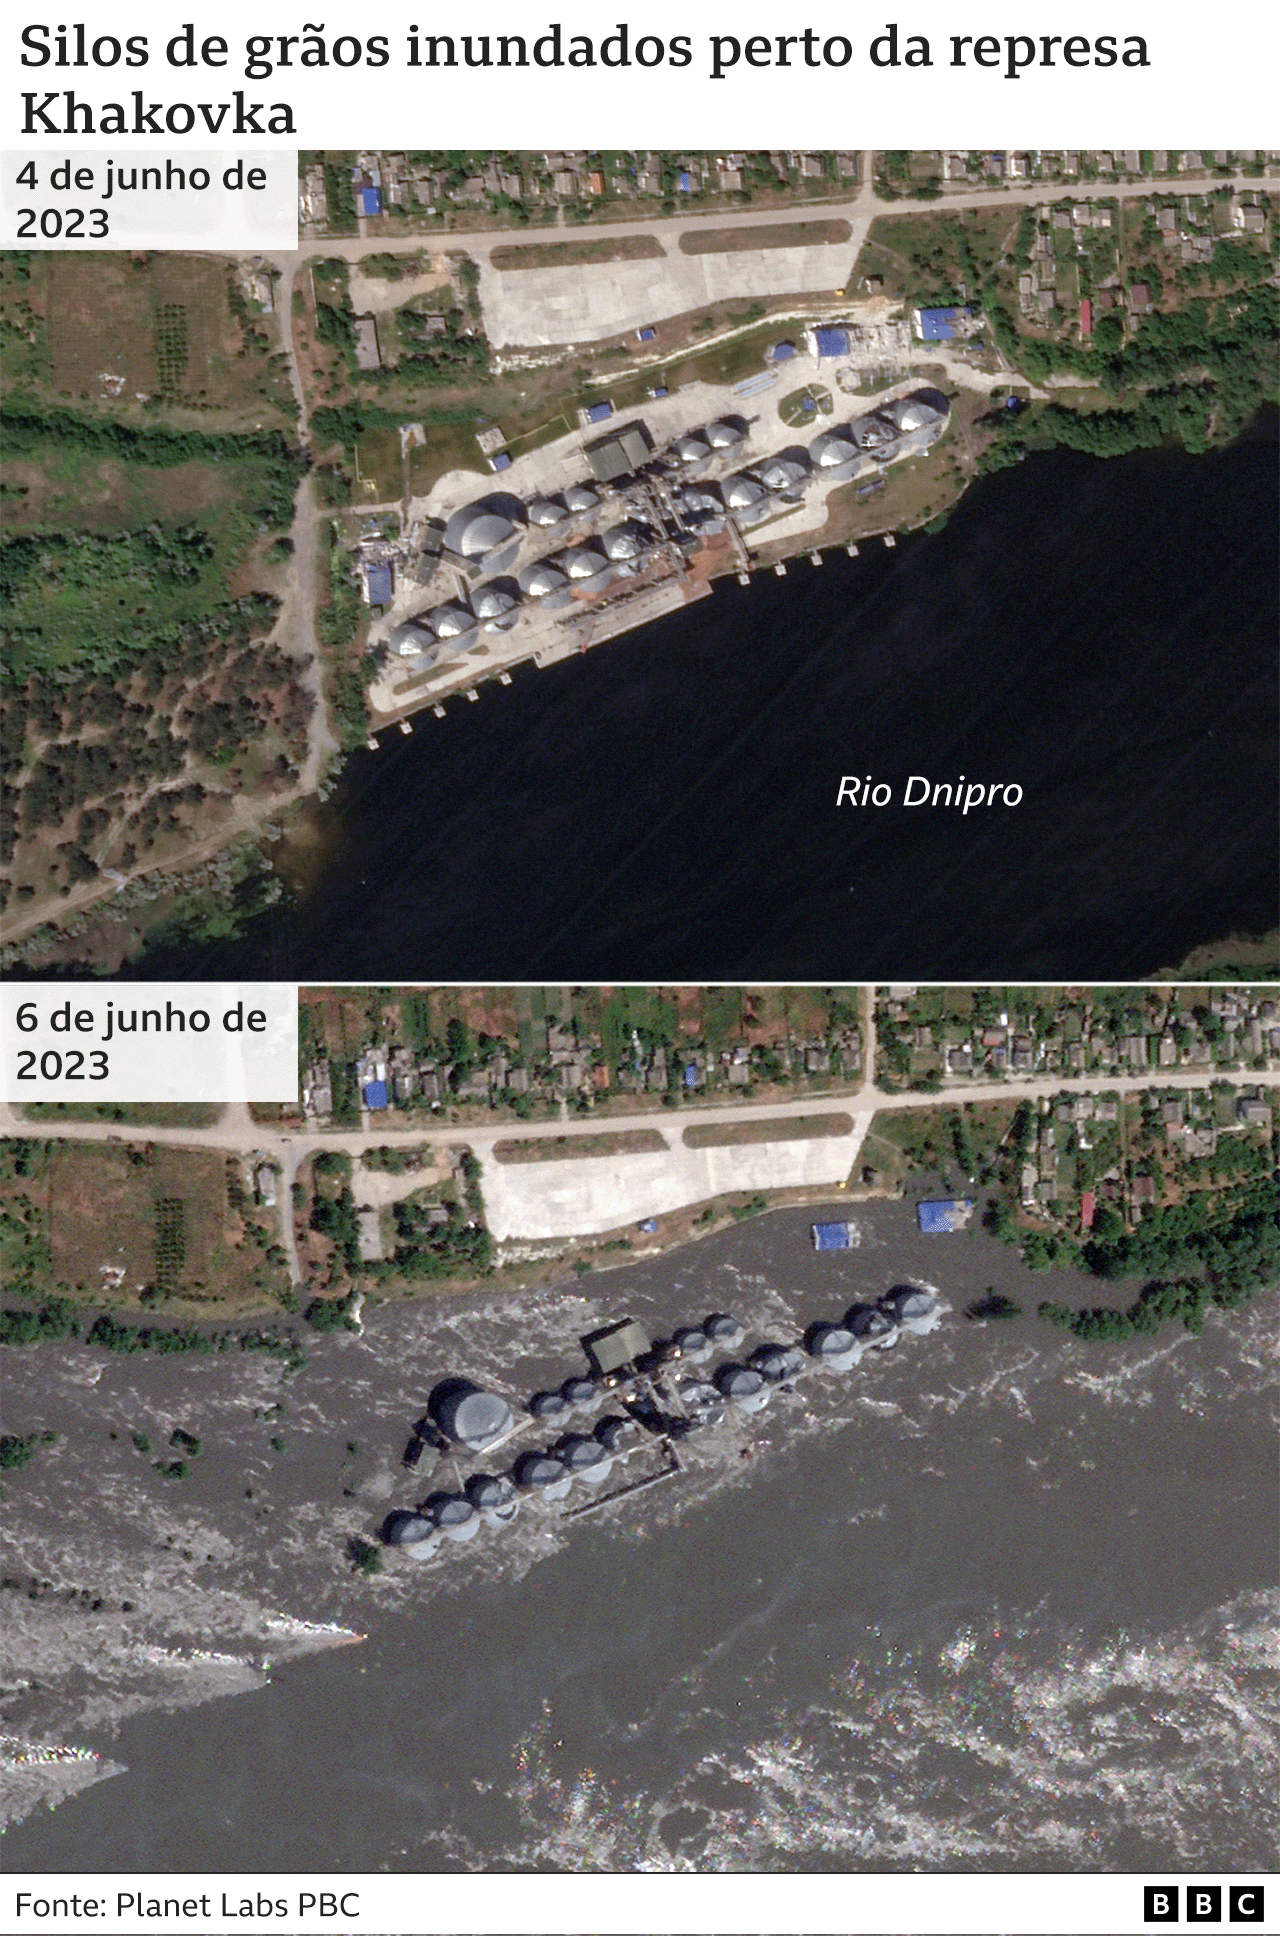 Imagens de satélite mostram danos aos silos de grãos ao longo do rio